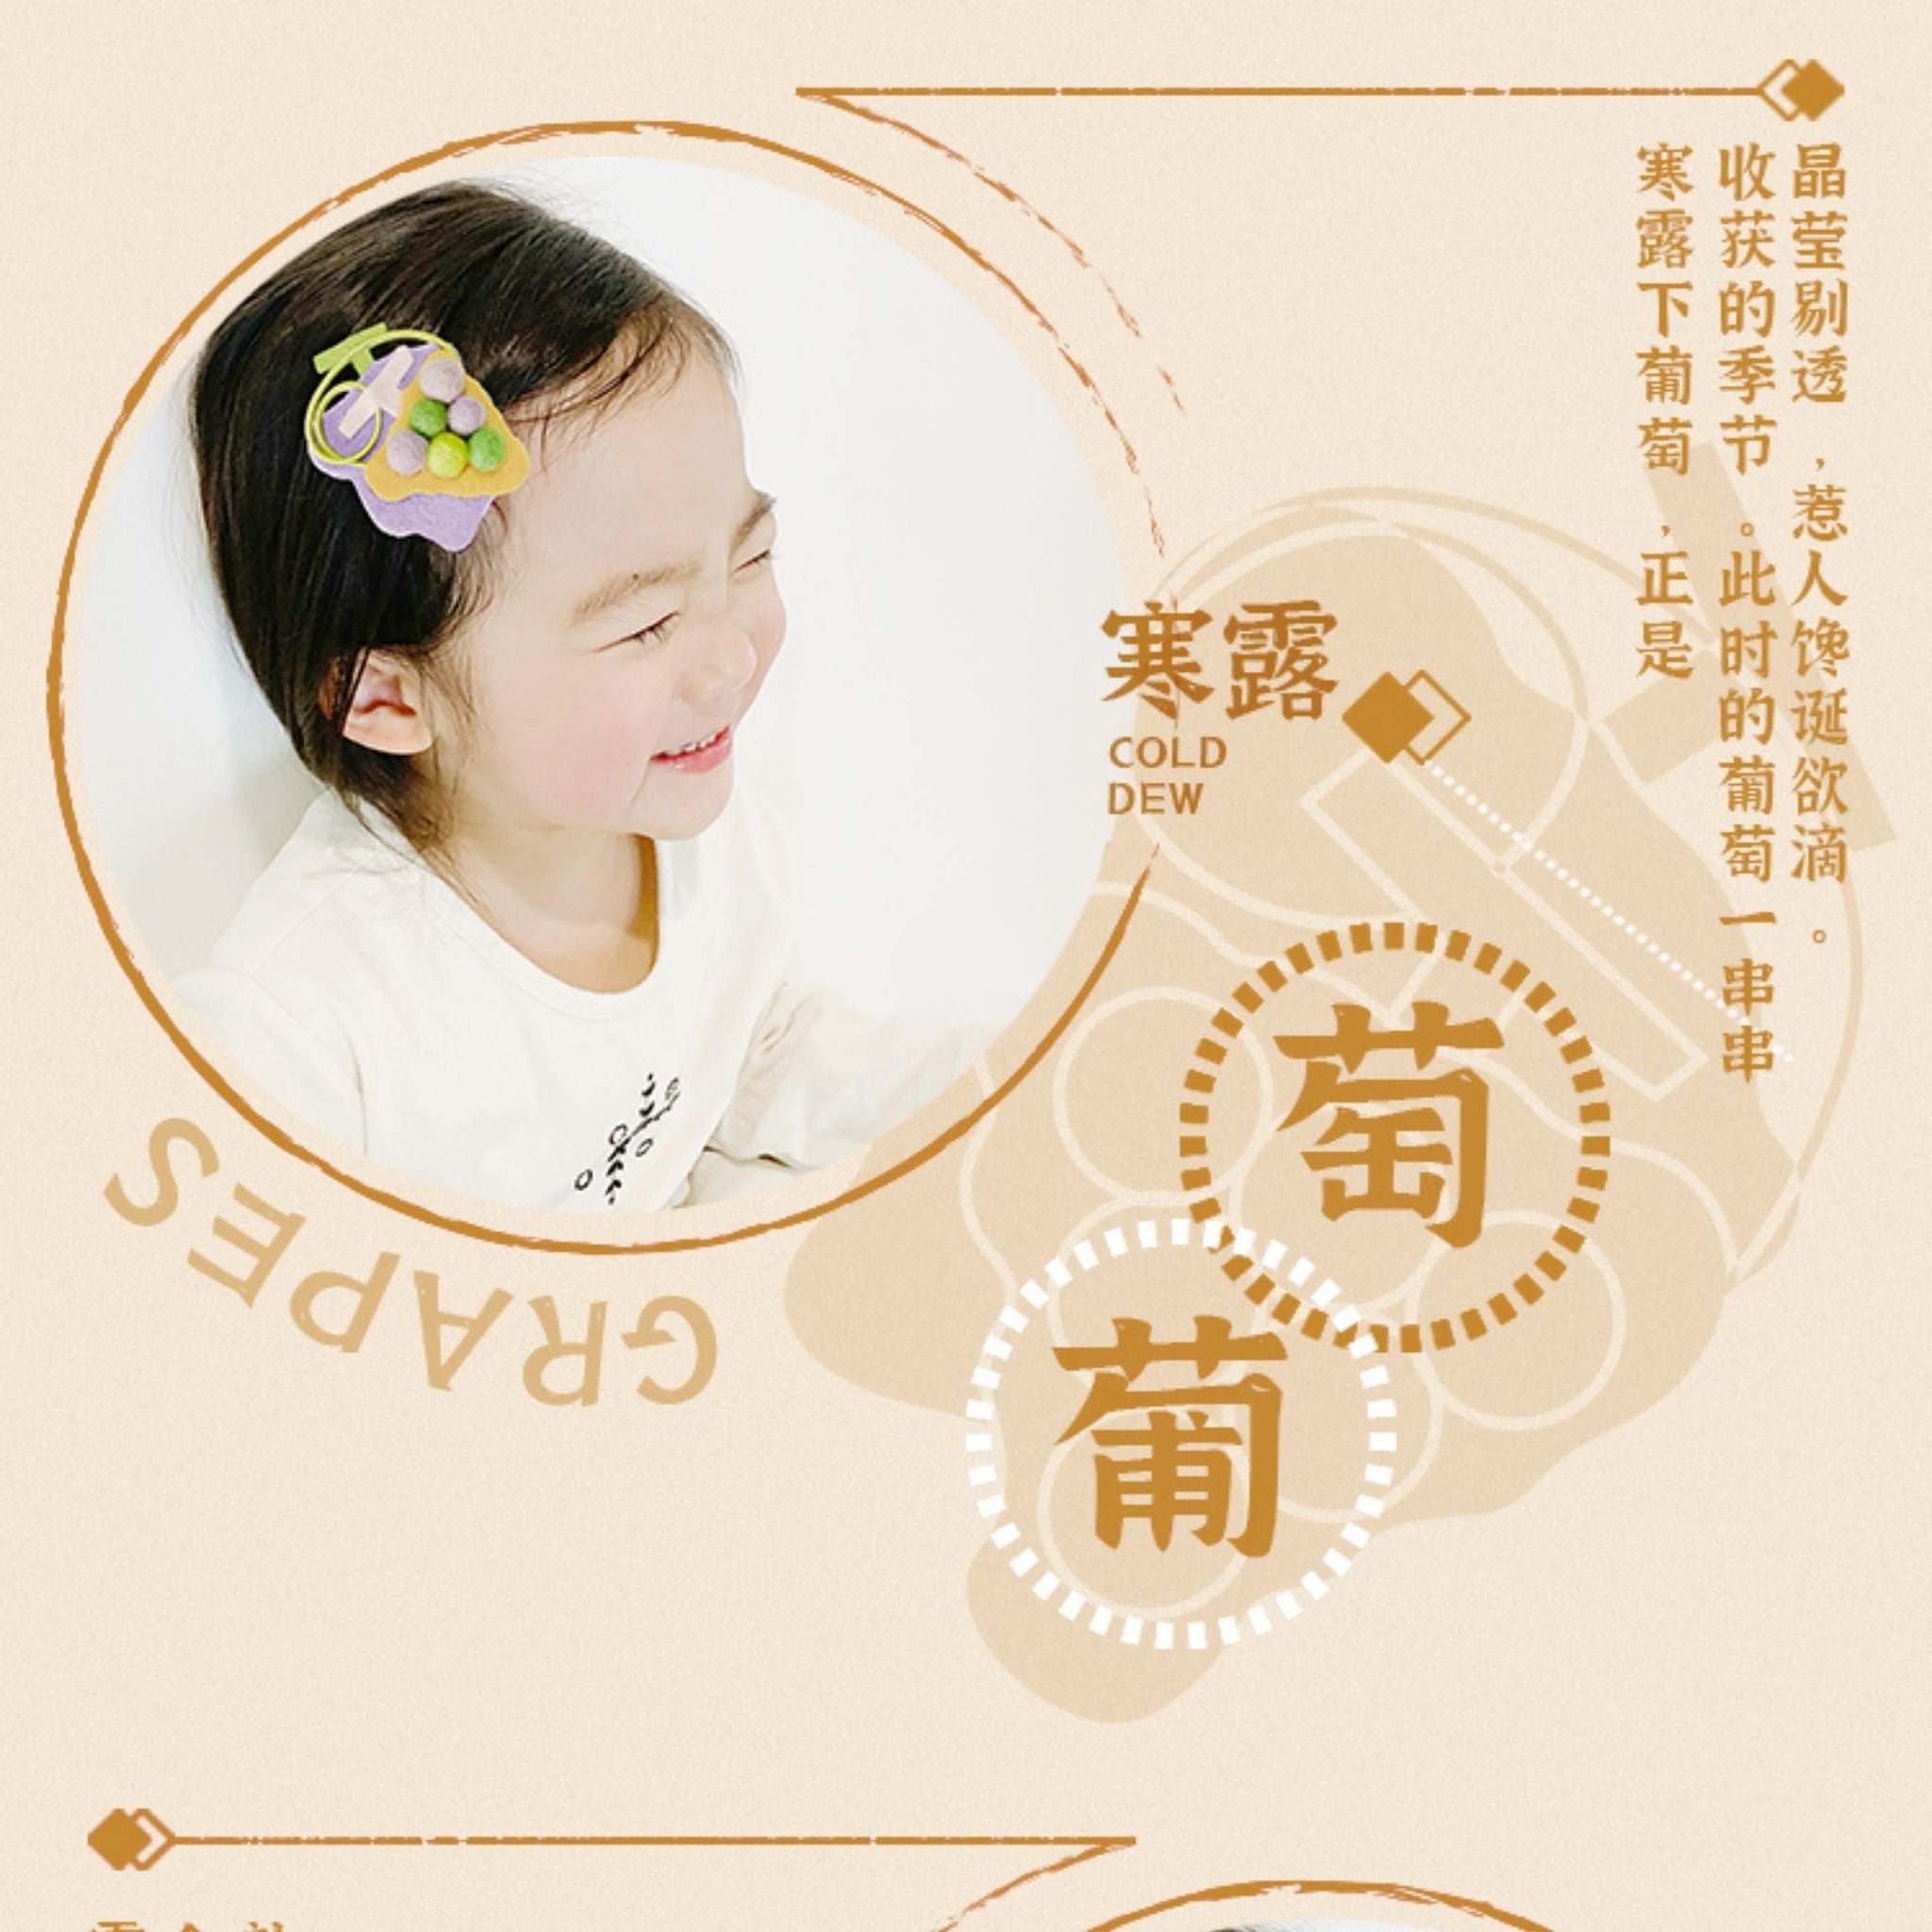 24 Solar Terms Kids Hair Accessories (AUTUMN 秋)